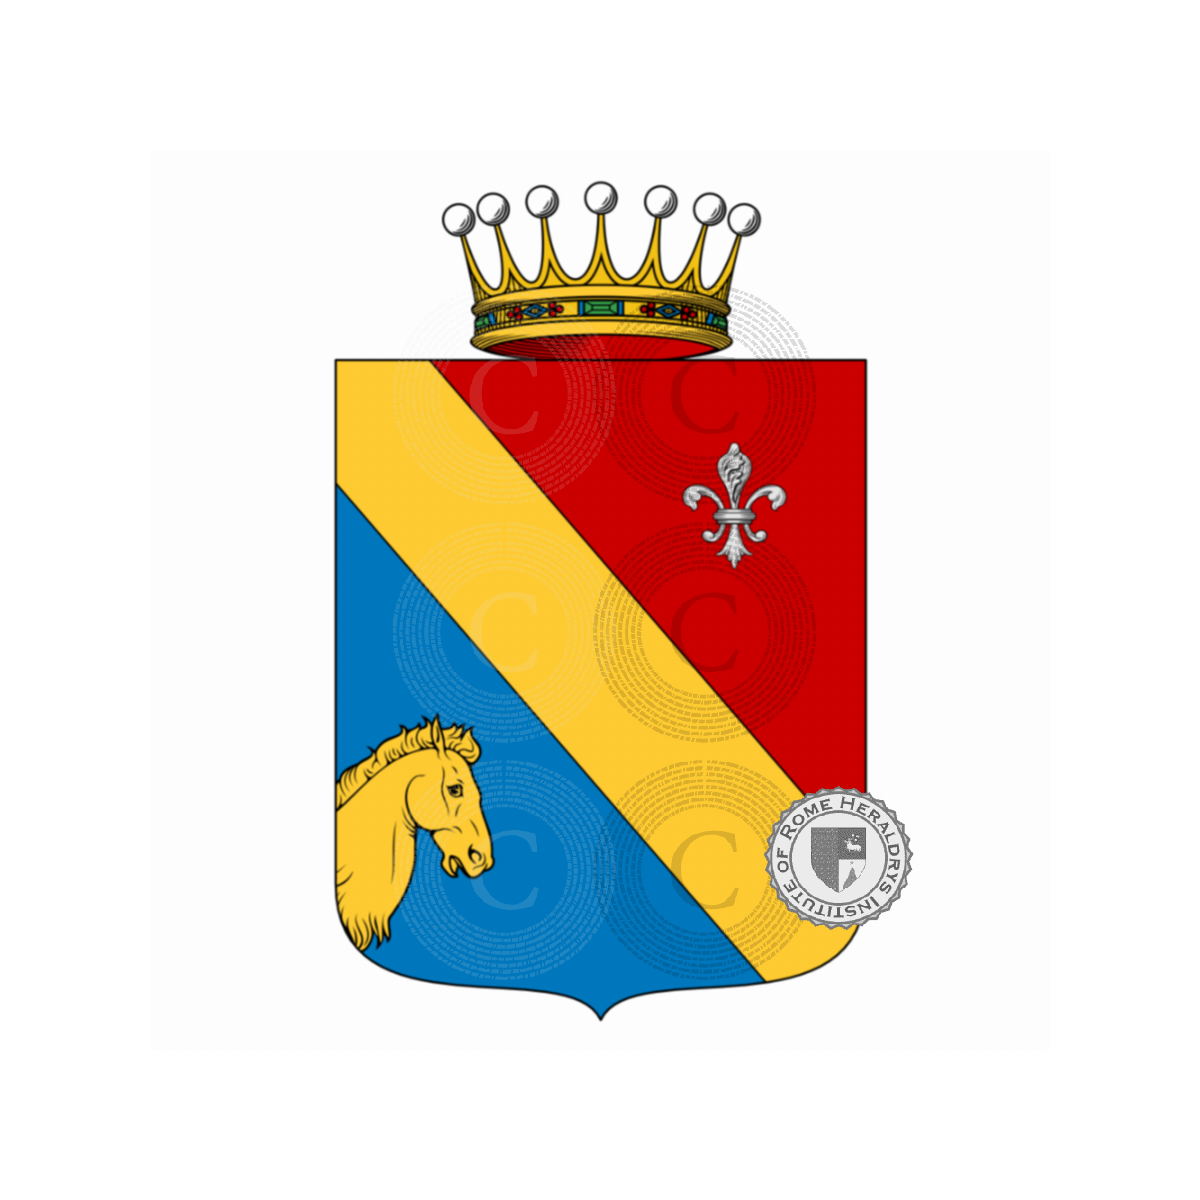 Wappen der FamilieGiunta, di Giunta,Giunta Bindi,Junta